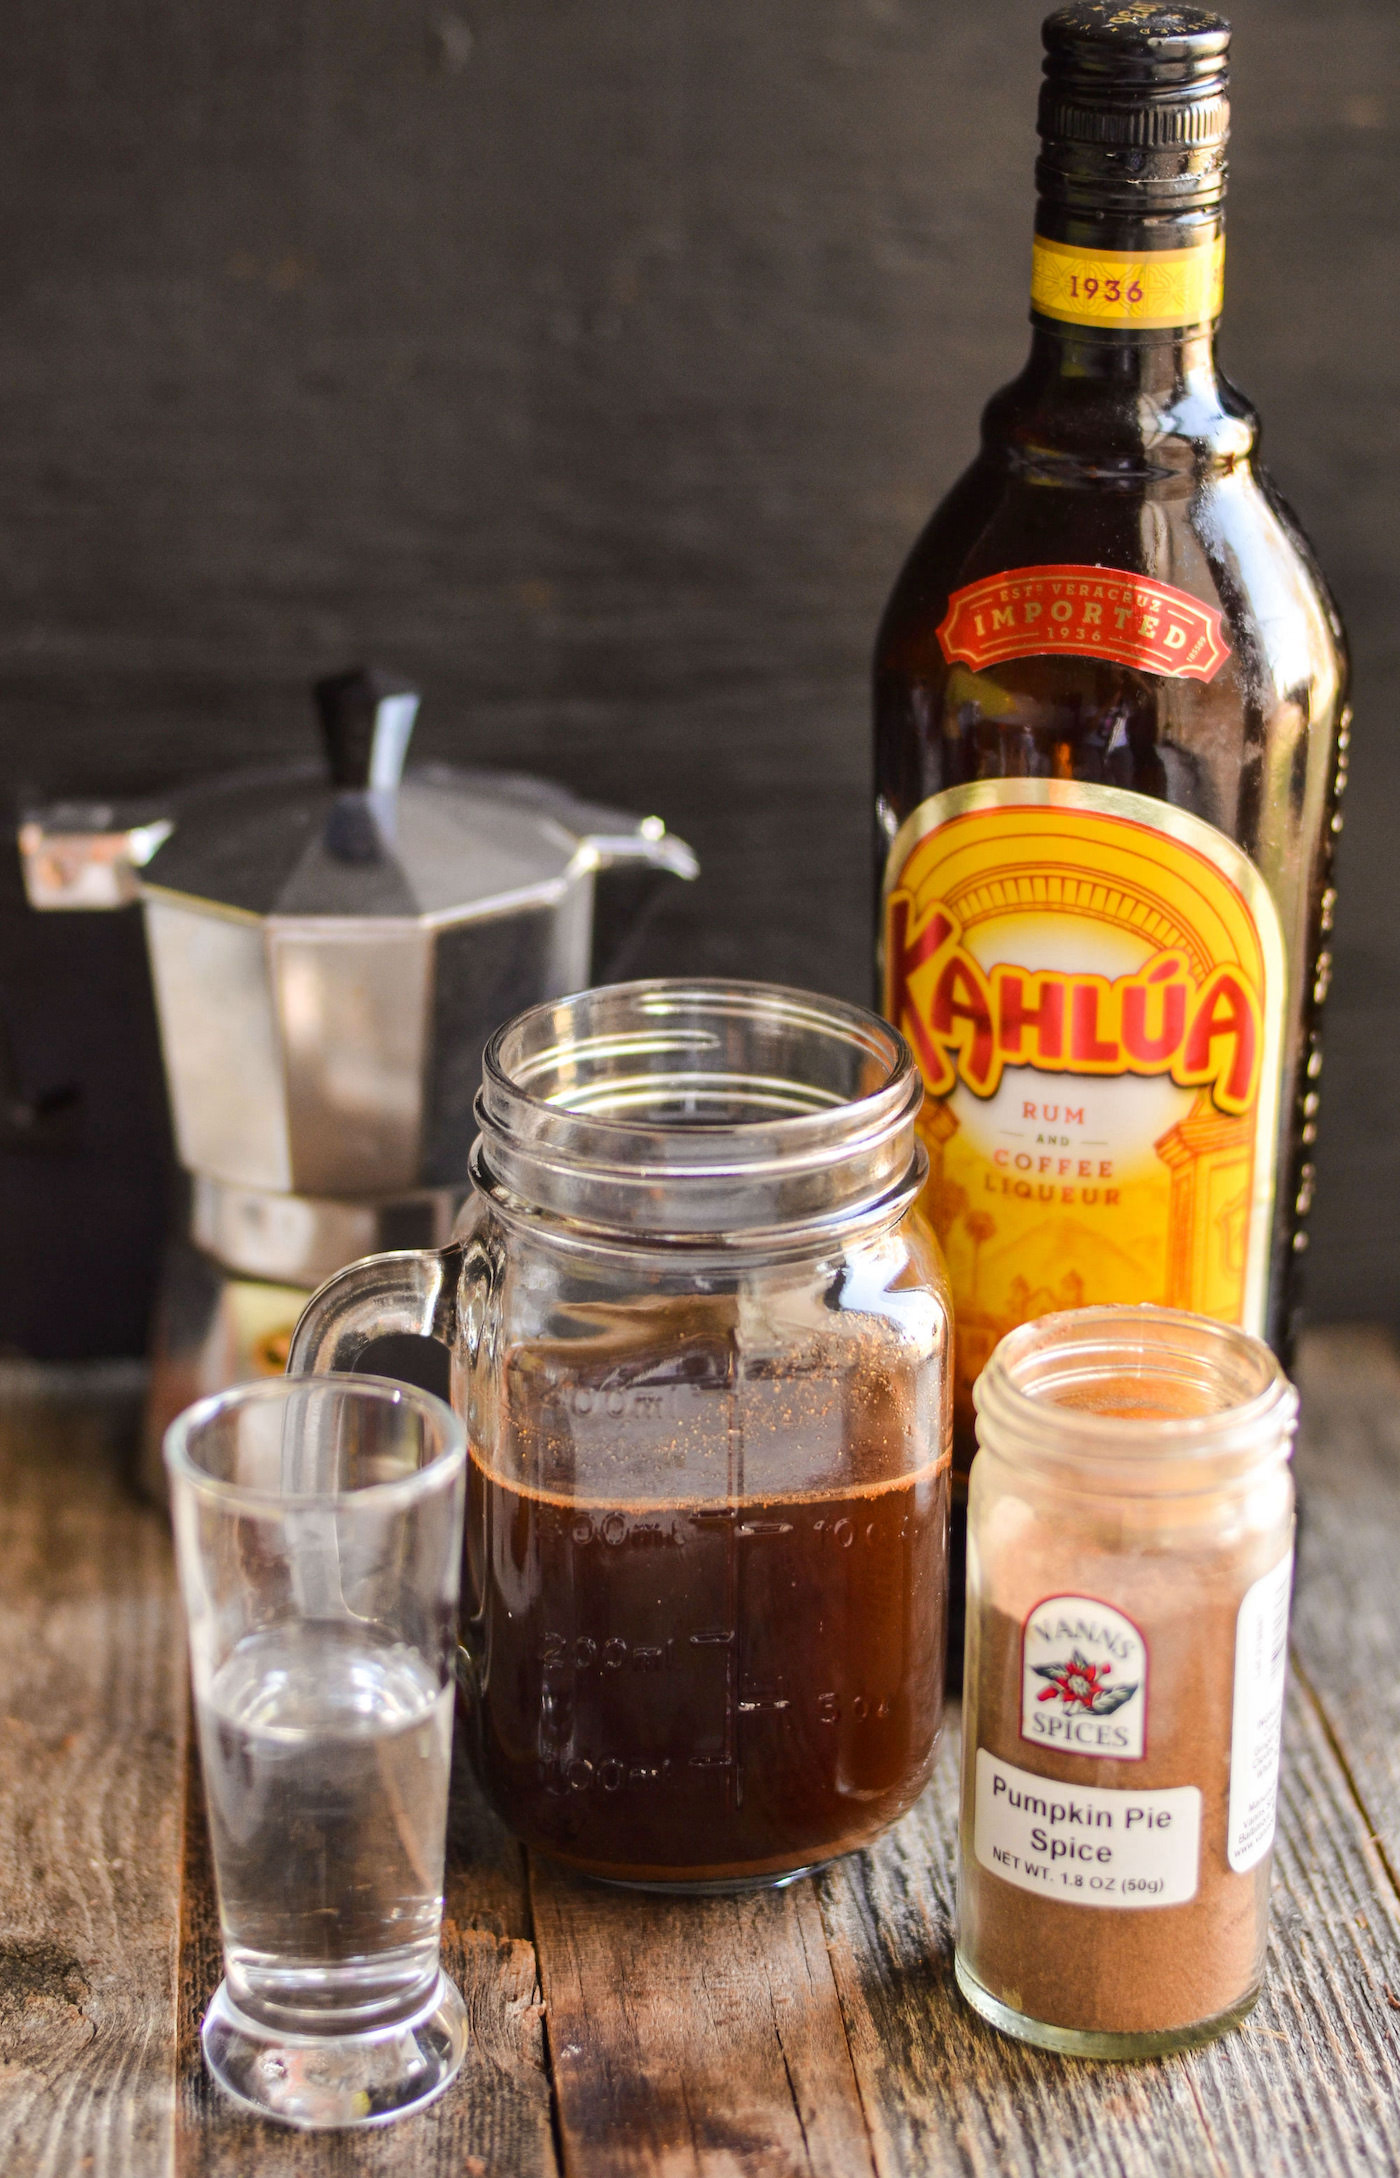 Coffee in a mason jar, bottle of Kahlua, pumpkin pie spice, shot of vodka